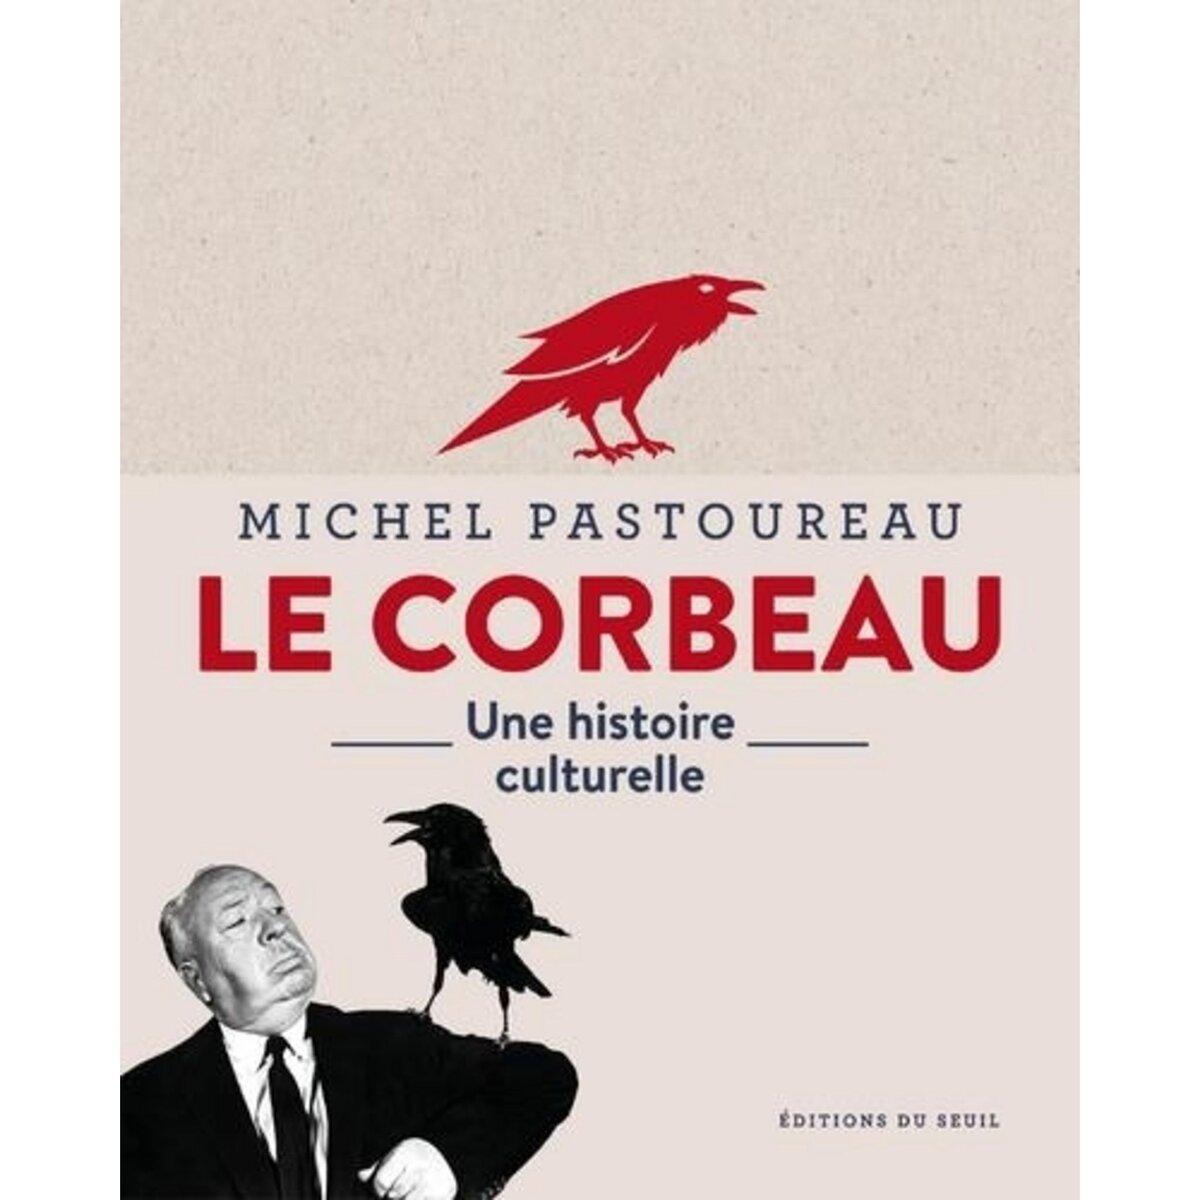  LE CORBEAU. UNE HISTOIRE CULTURELLE, Pastoureau Michel